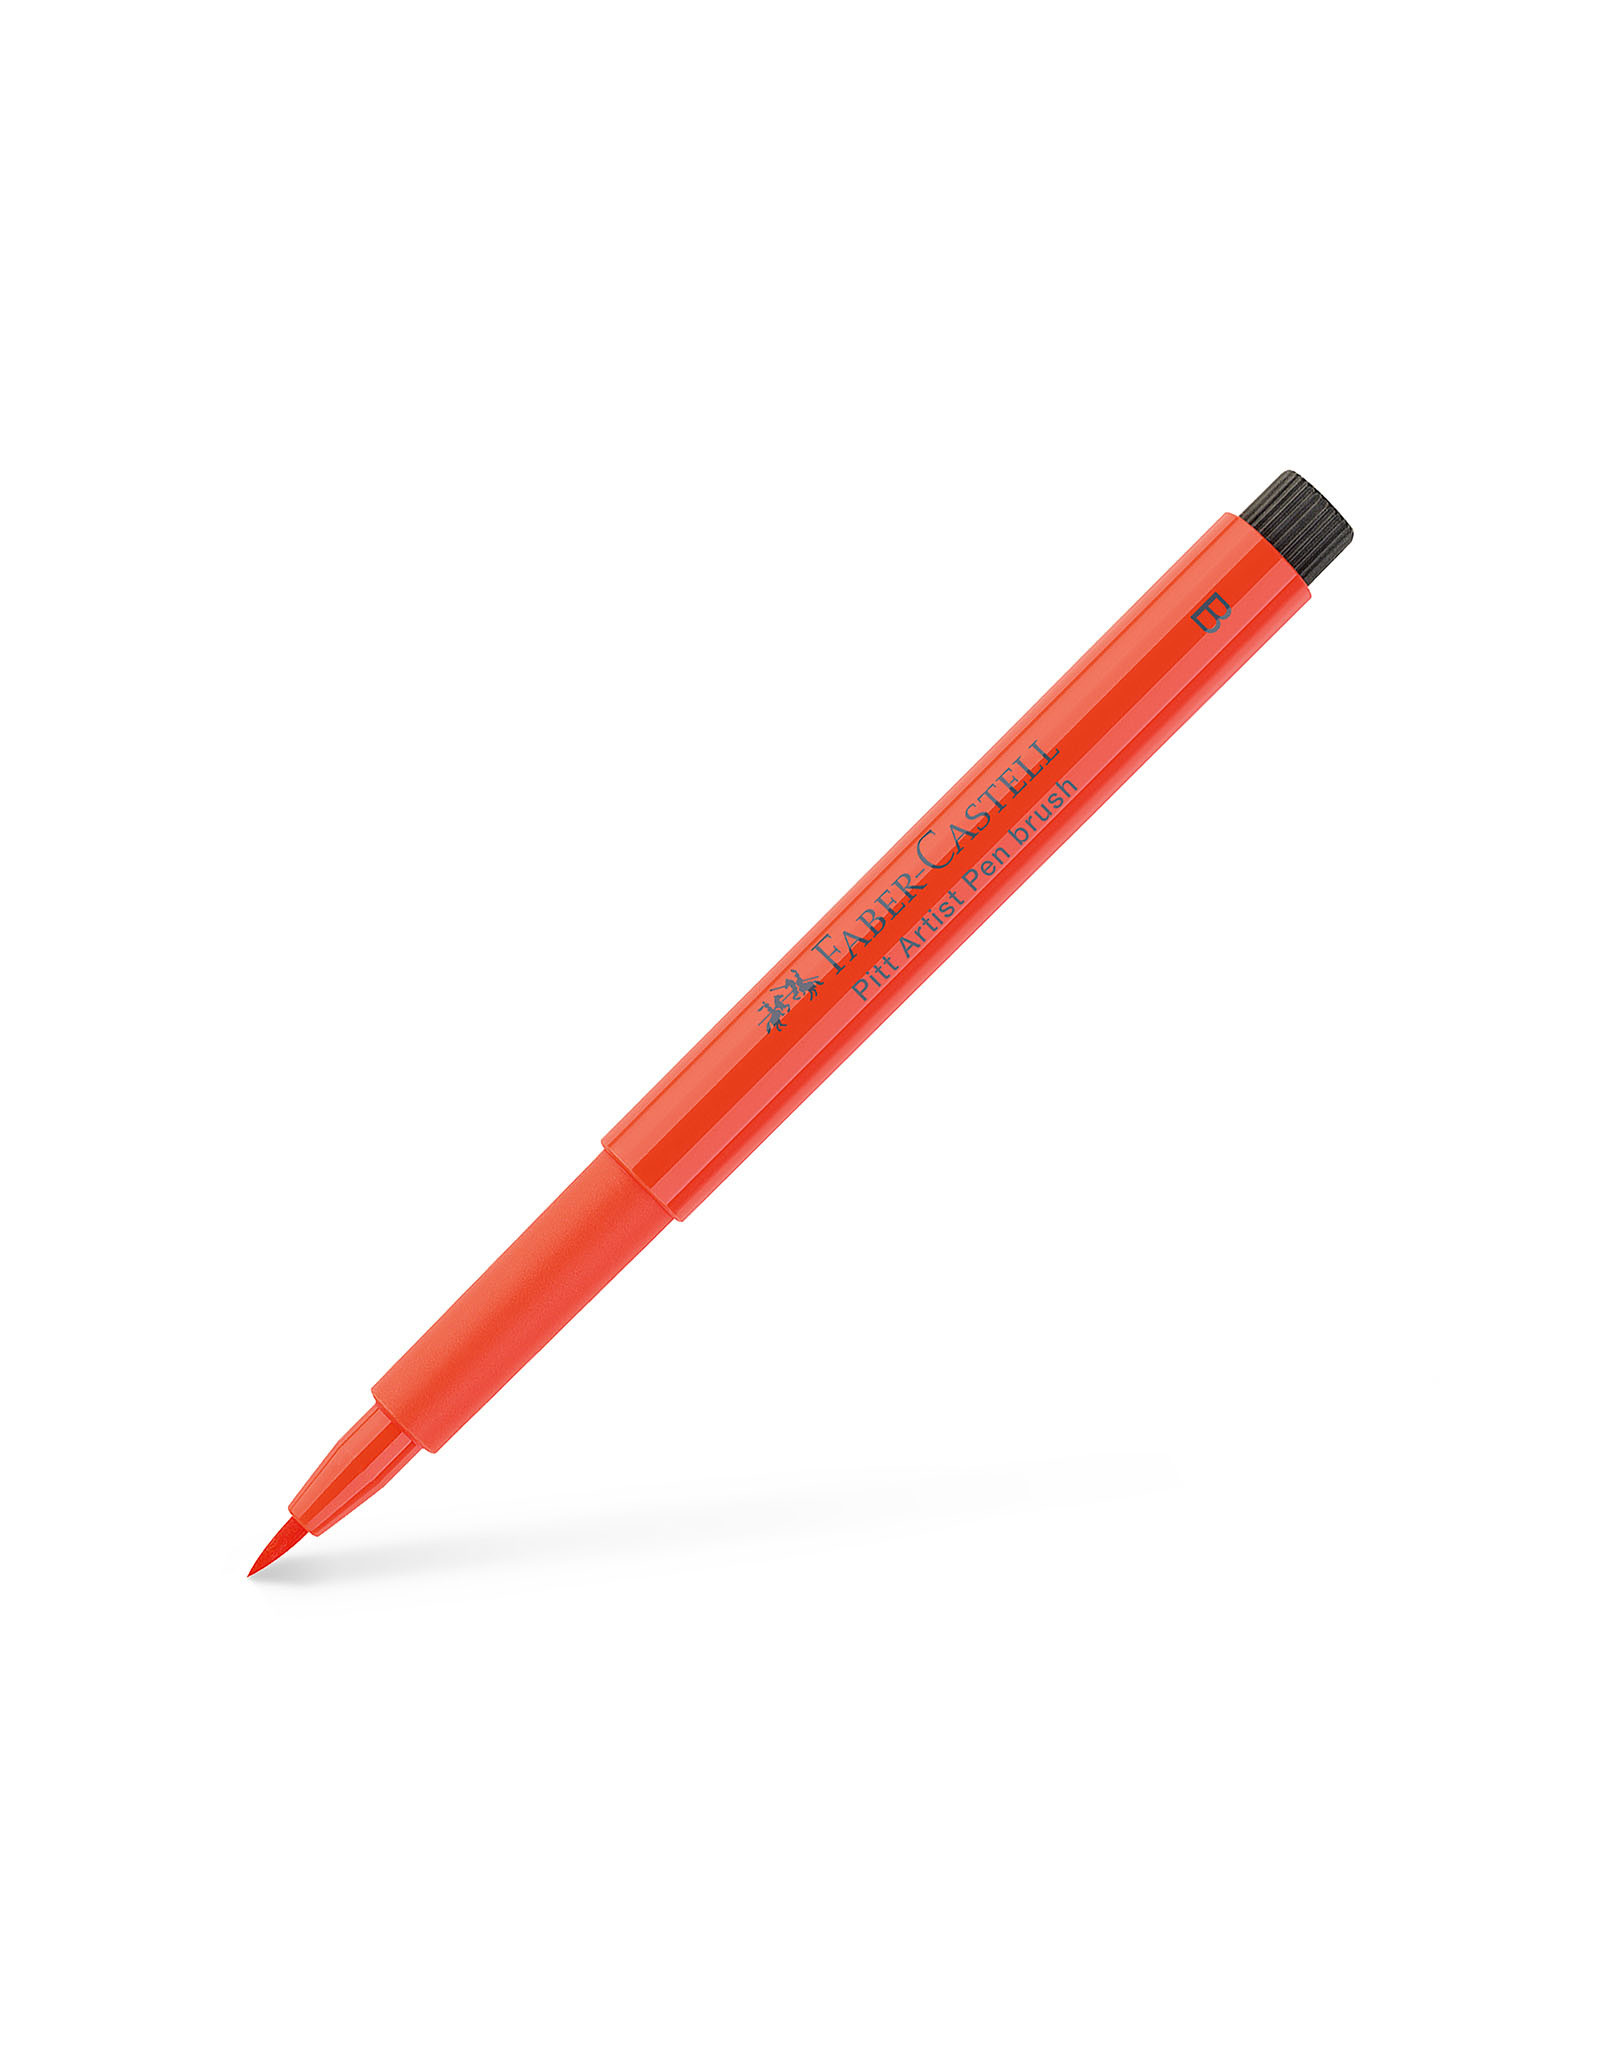 FABER-CASTELL Pitt Artist Pen, Brush, Scarlet Red